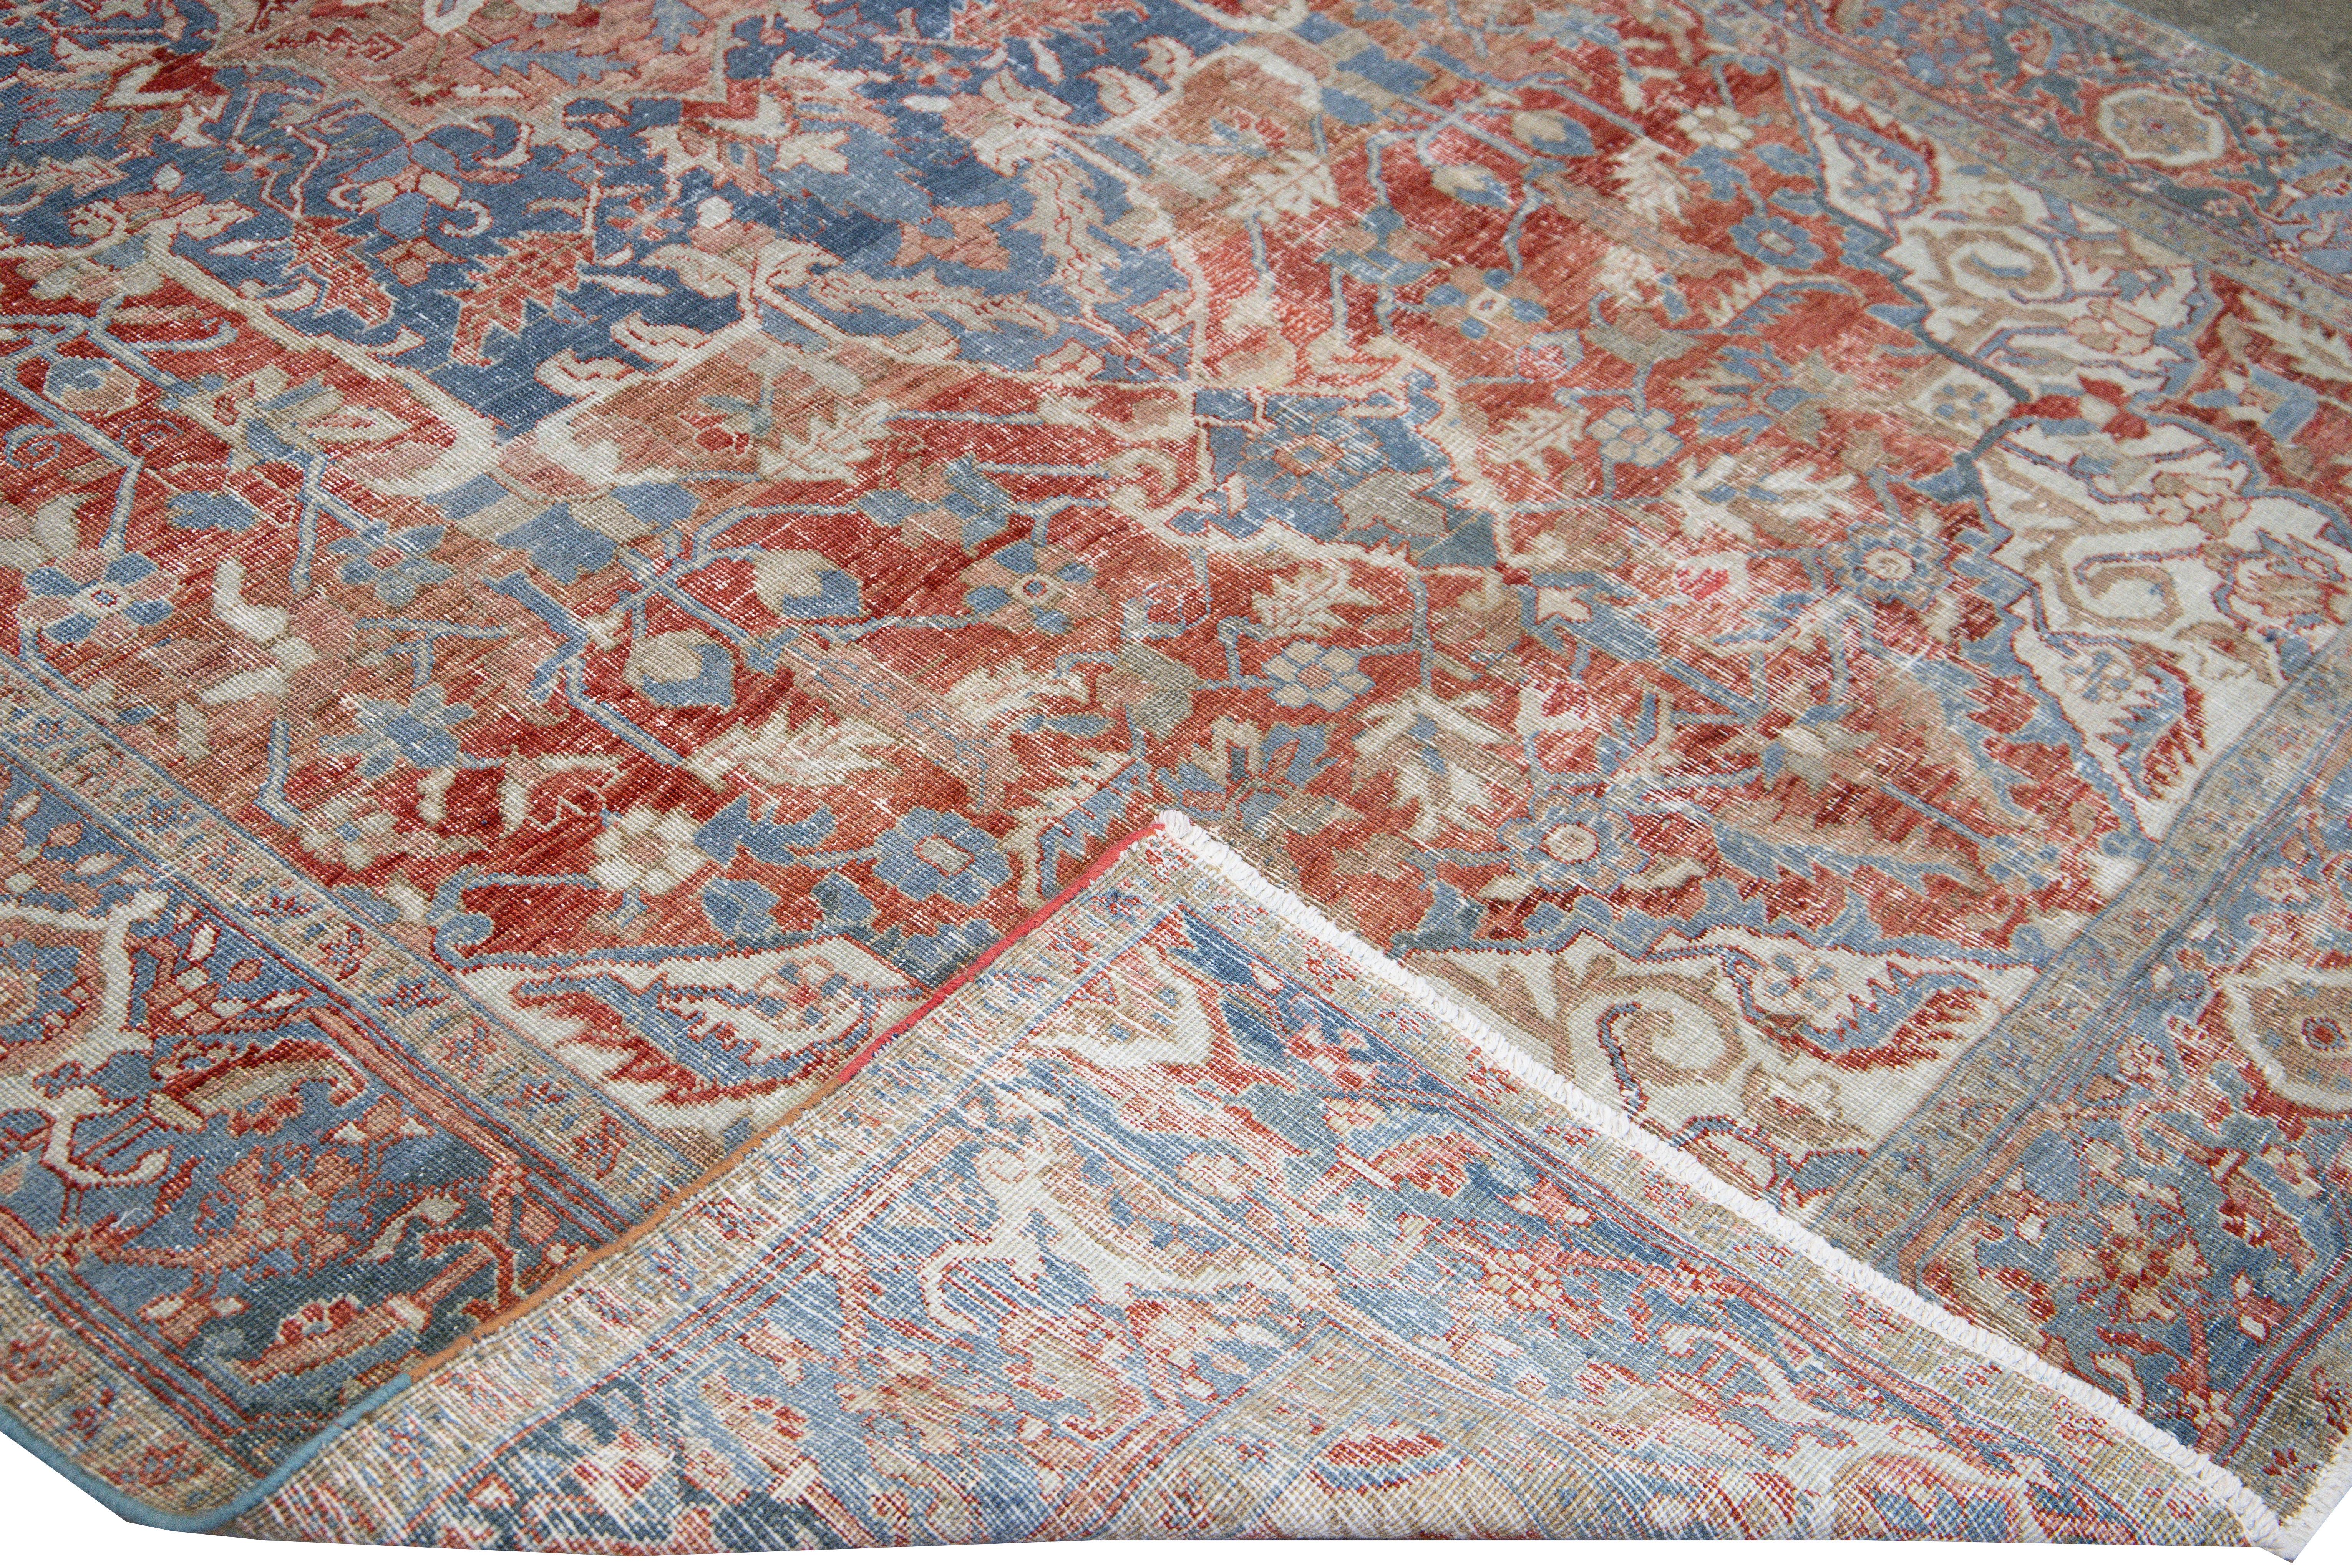 Schöner antiker persischer Heriz-Handknüpfteppich aus Wolle mit rotem Feld. Dieser Serapi-Teppich hat einen marineblauen Rahmen und elfenbeinfarbene Akzente in einem prächtigen Shabby-Chic-Design.

Dieser Teppich misst: 7'3